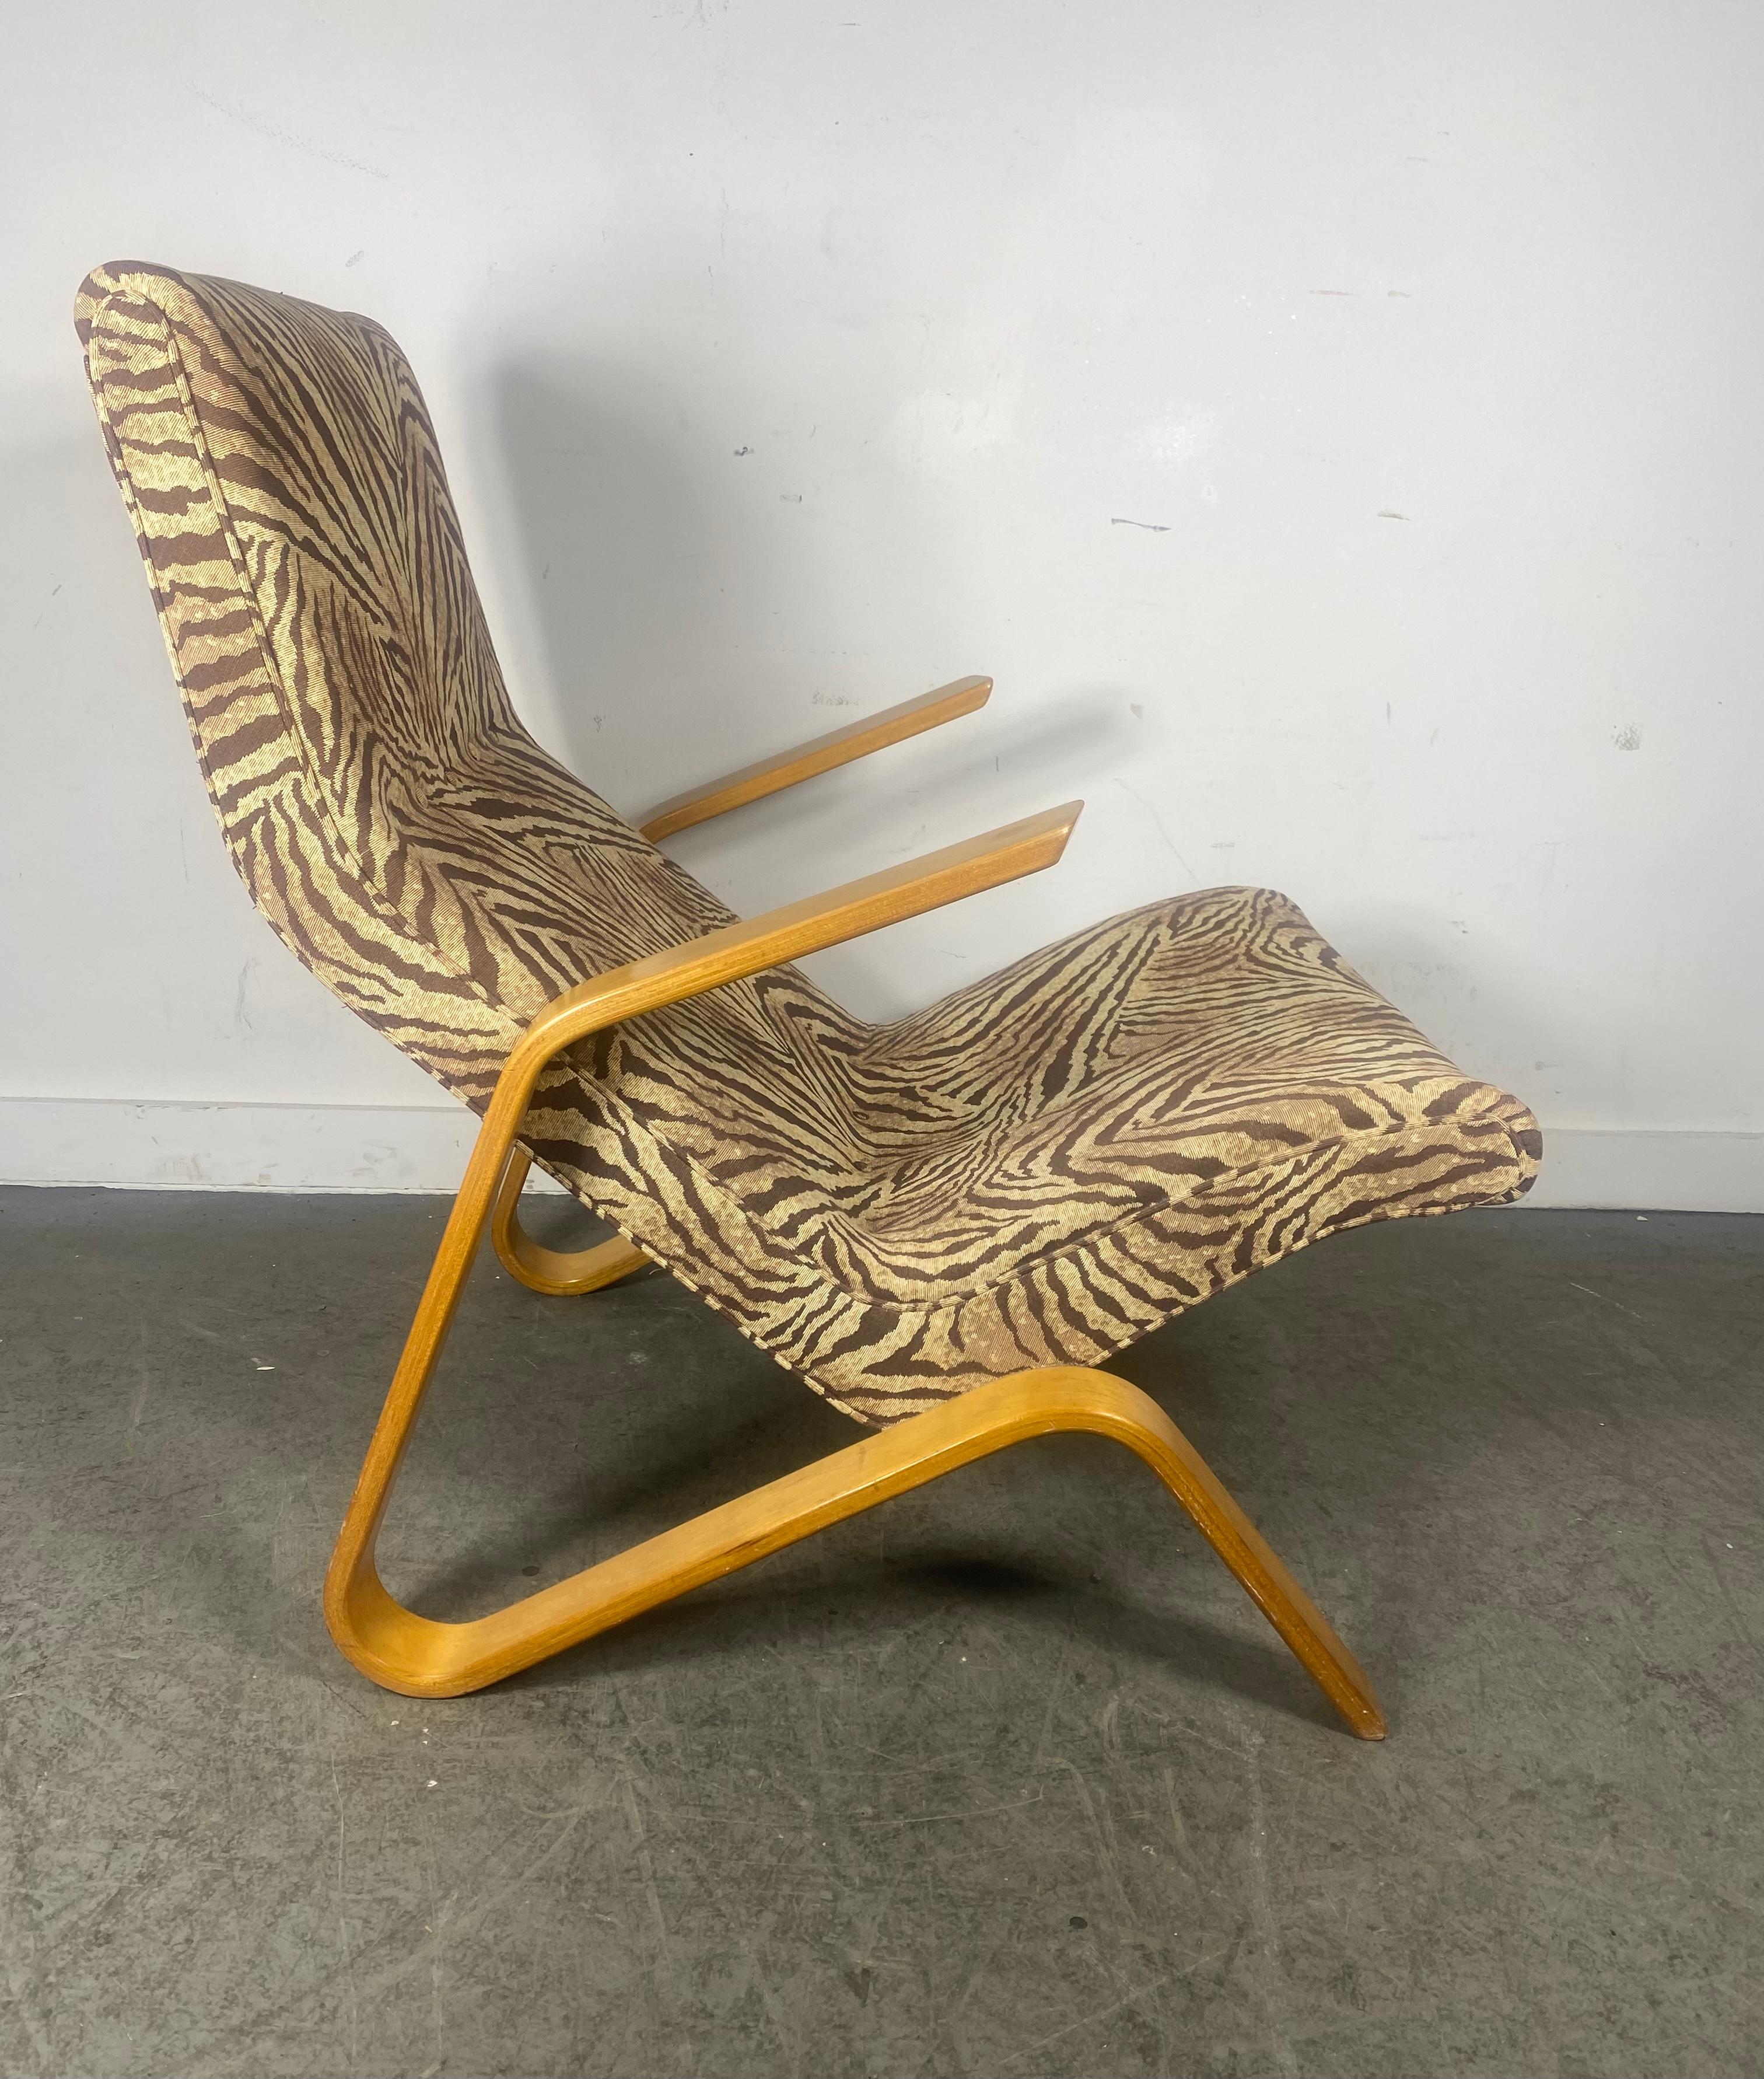 Grasshopper Chair von Eero Saarinen ... Schönes Exemplar aus den 1970er Jahren, ordentlich neu gepolstert. Behält original Birke Laminat Sperrholz Finish,, Wunderbare Patina,, große Farbe..Extrem komfortabel. Persönliche Zustellung in New York City